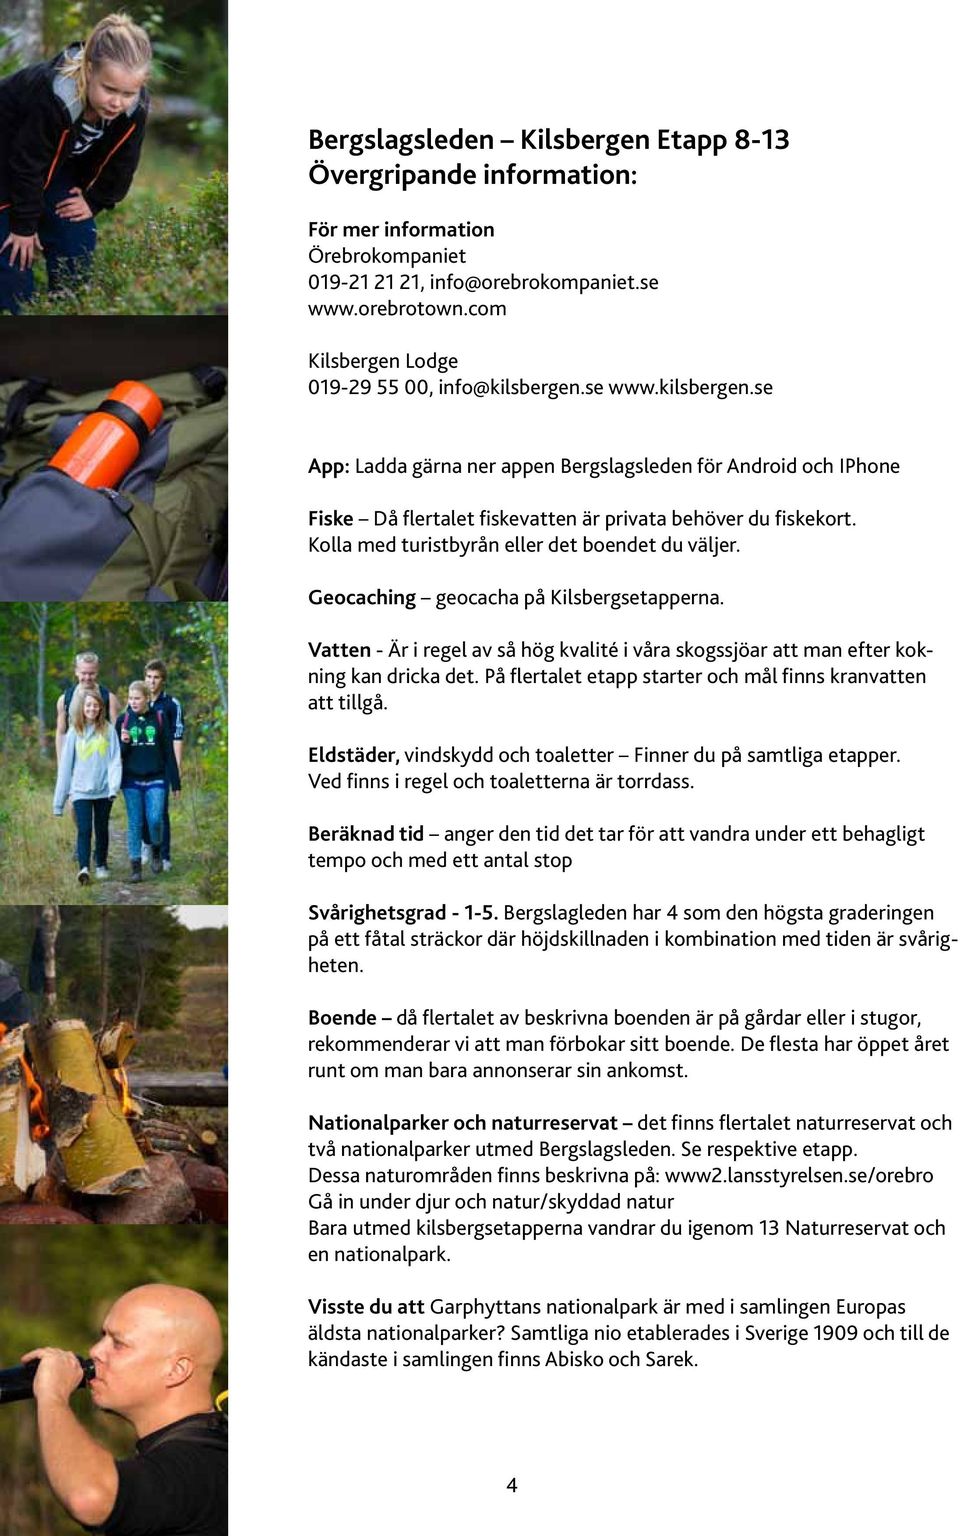 Kolla med turistbyrån eller det boendet du väljer. Geocaching geocacha på Kilsbergsetapperna. Vatten - Är i regel av så hög kvalité i våra skogssjöar att man efter kokning kan dricka det.